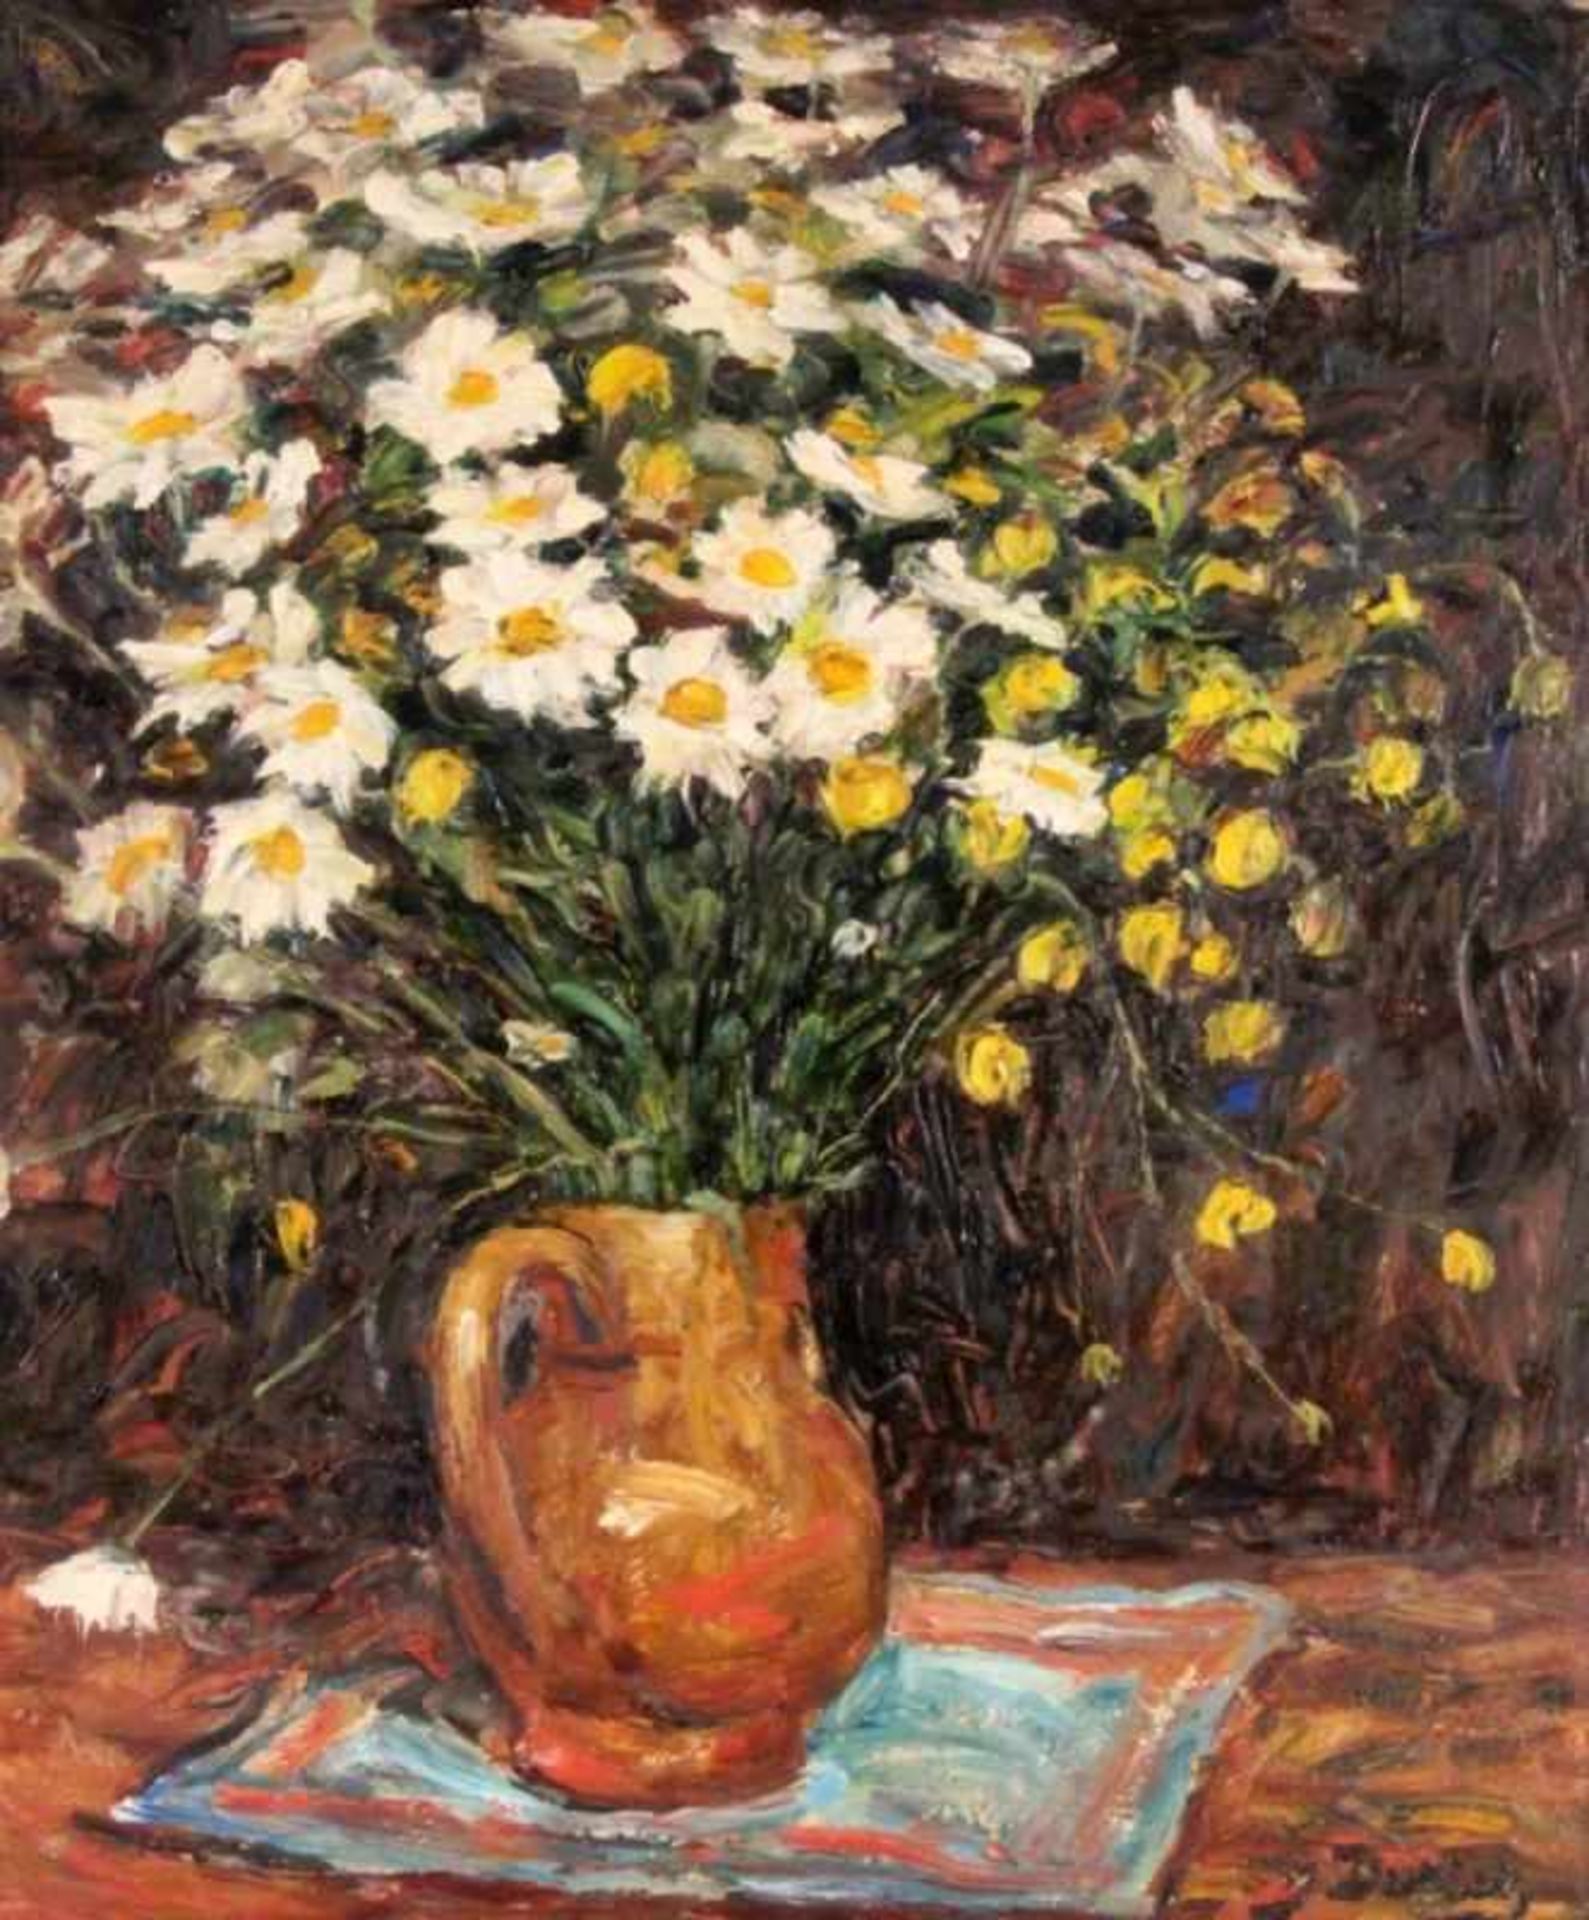 DURIEZ, JULESFrankreich 1900 - 1993 Blumen in der Vase. Öl/Holz, signiert. 65x54cm, Ra.DURIEZ, - Bild 3 aus 3